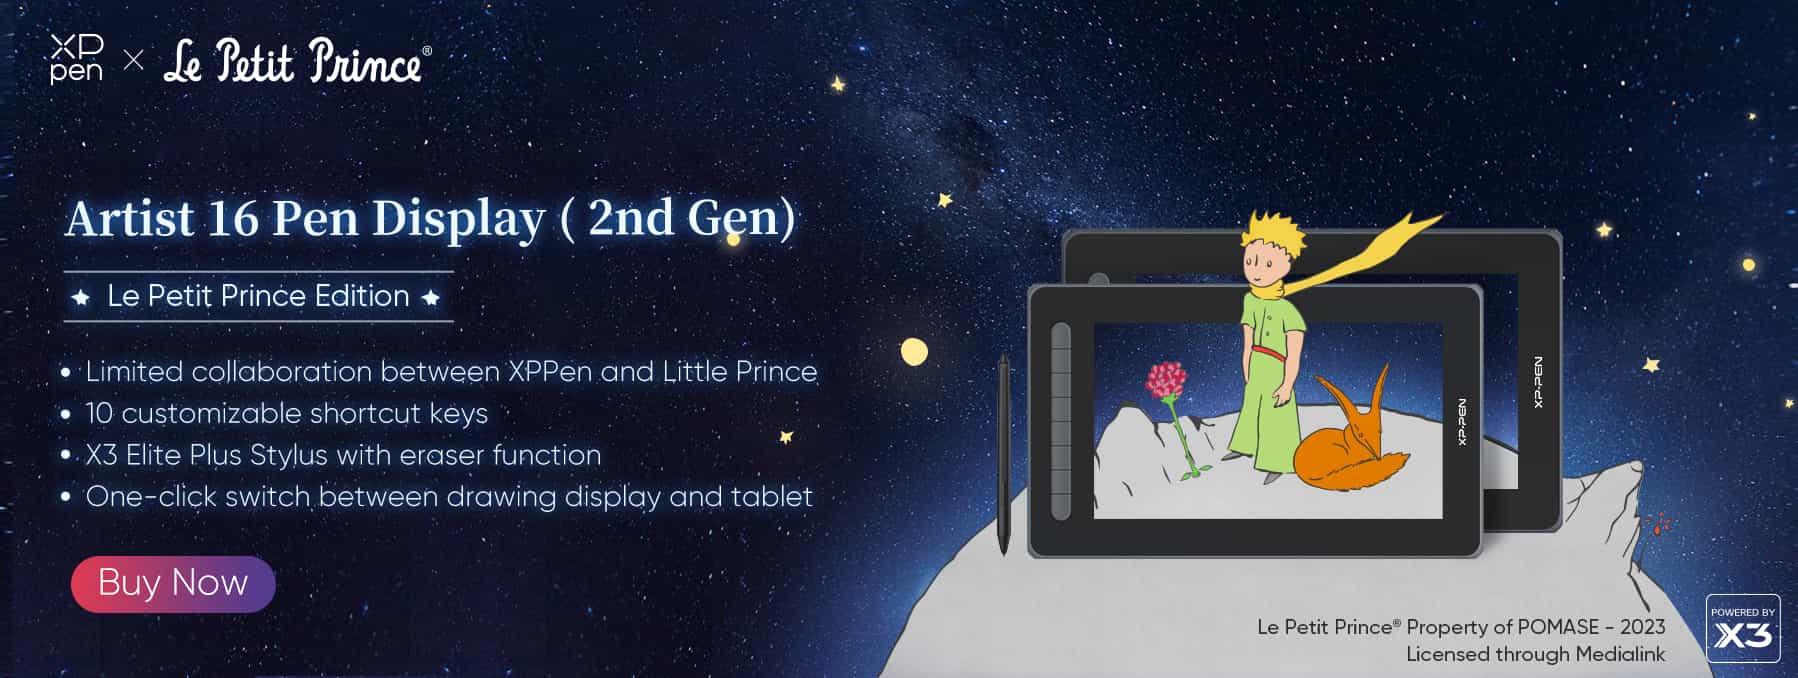 XPPen Artist 16 (Gen 2) Le Petit Prince Edition